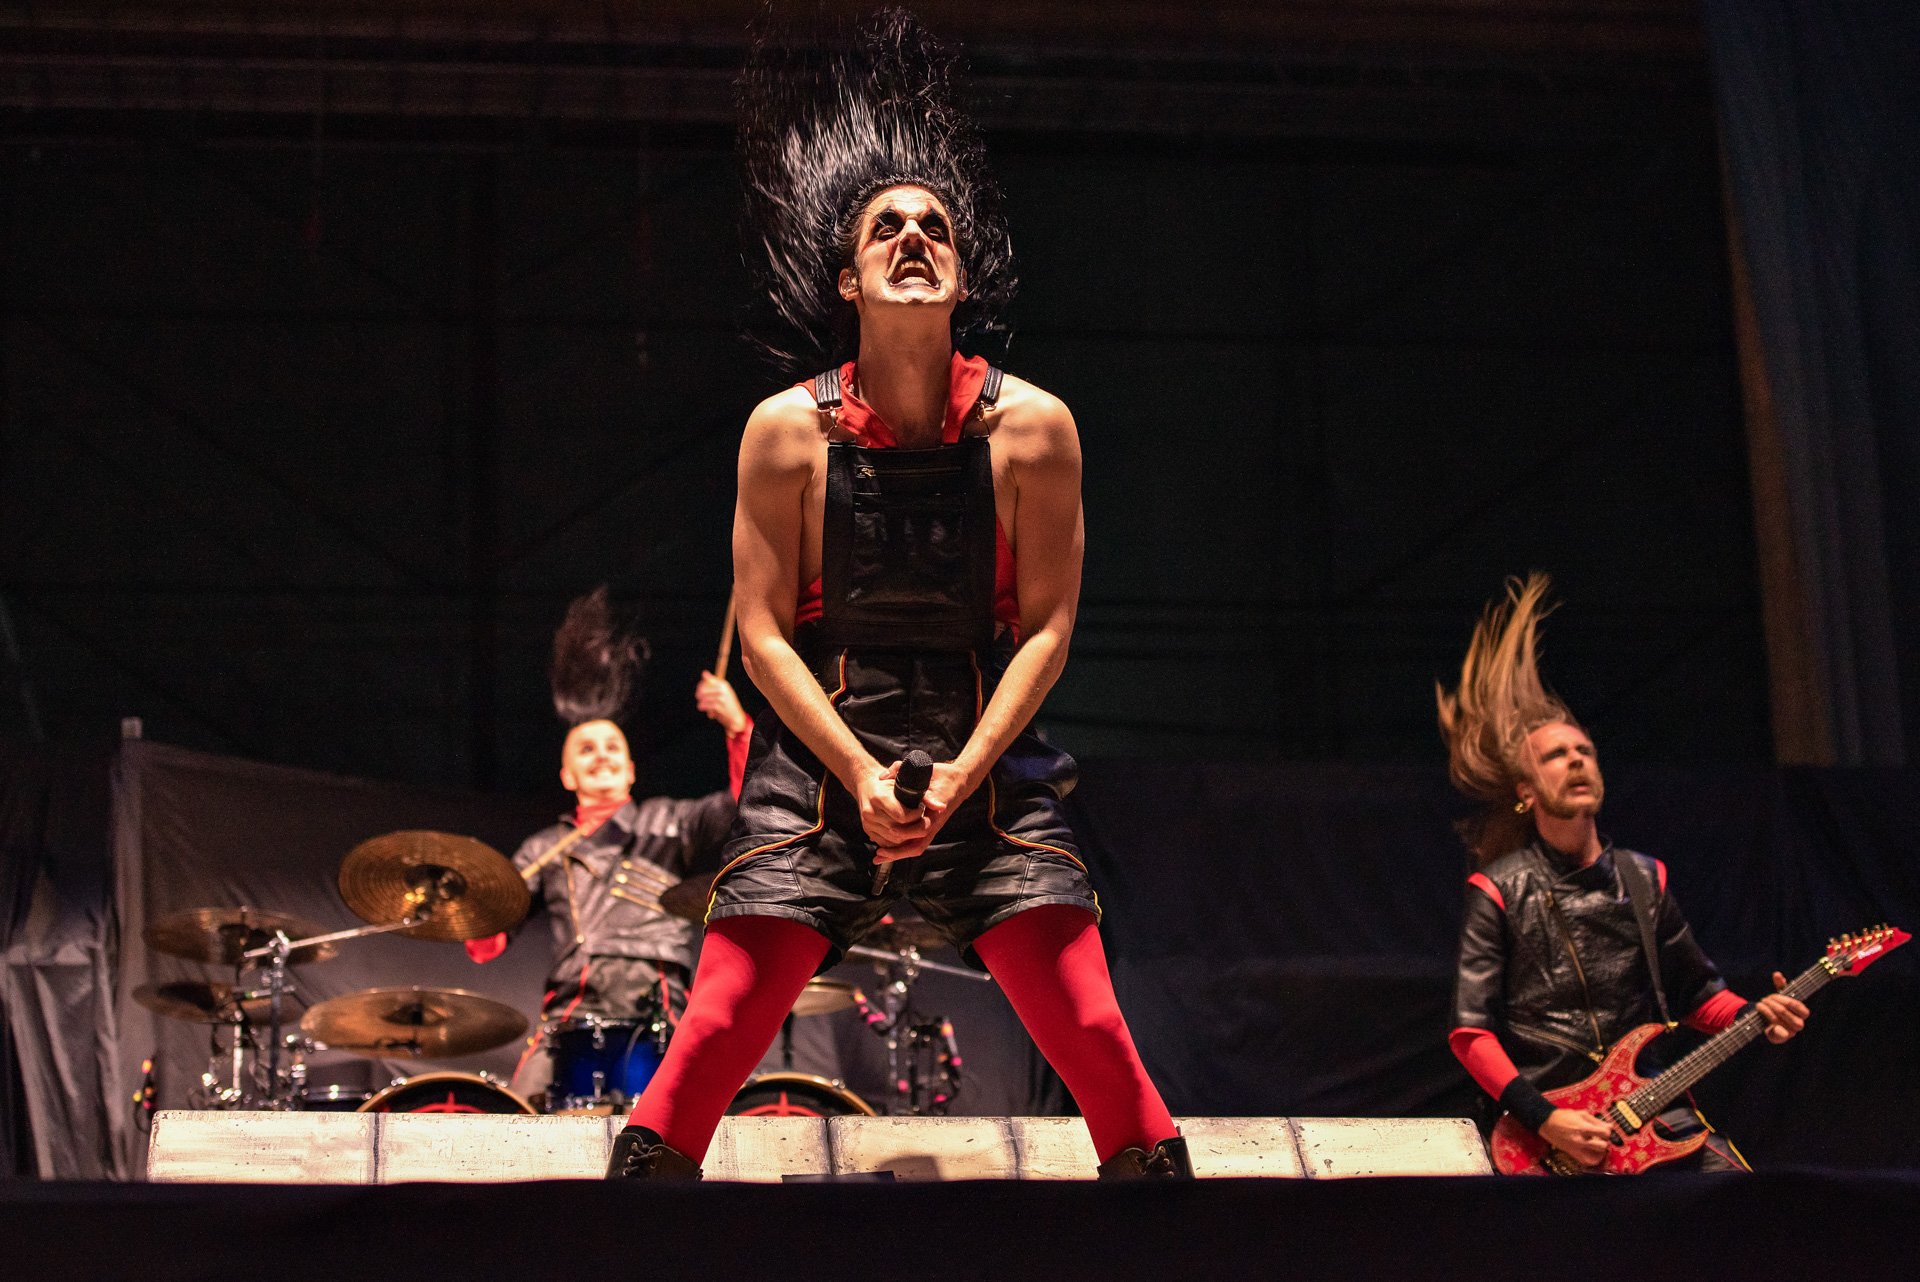 AVATAR abre show do Iron Maiden em São Paulo. Crédito: Leca Suzuki